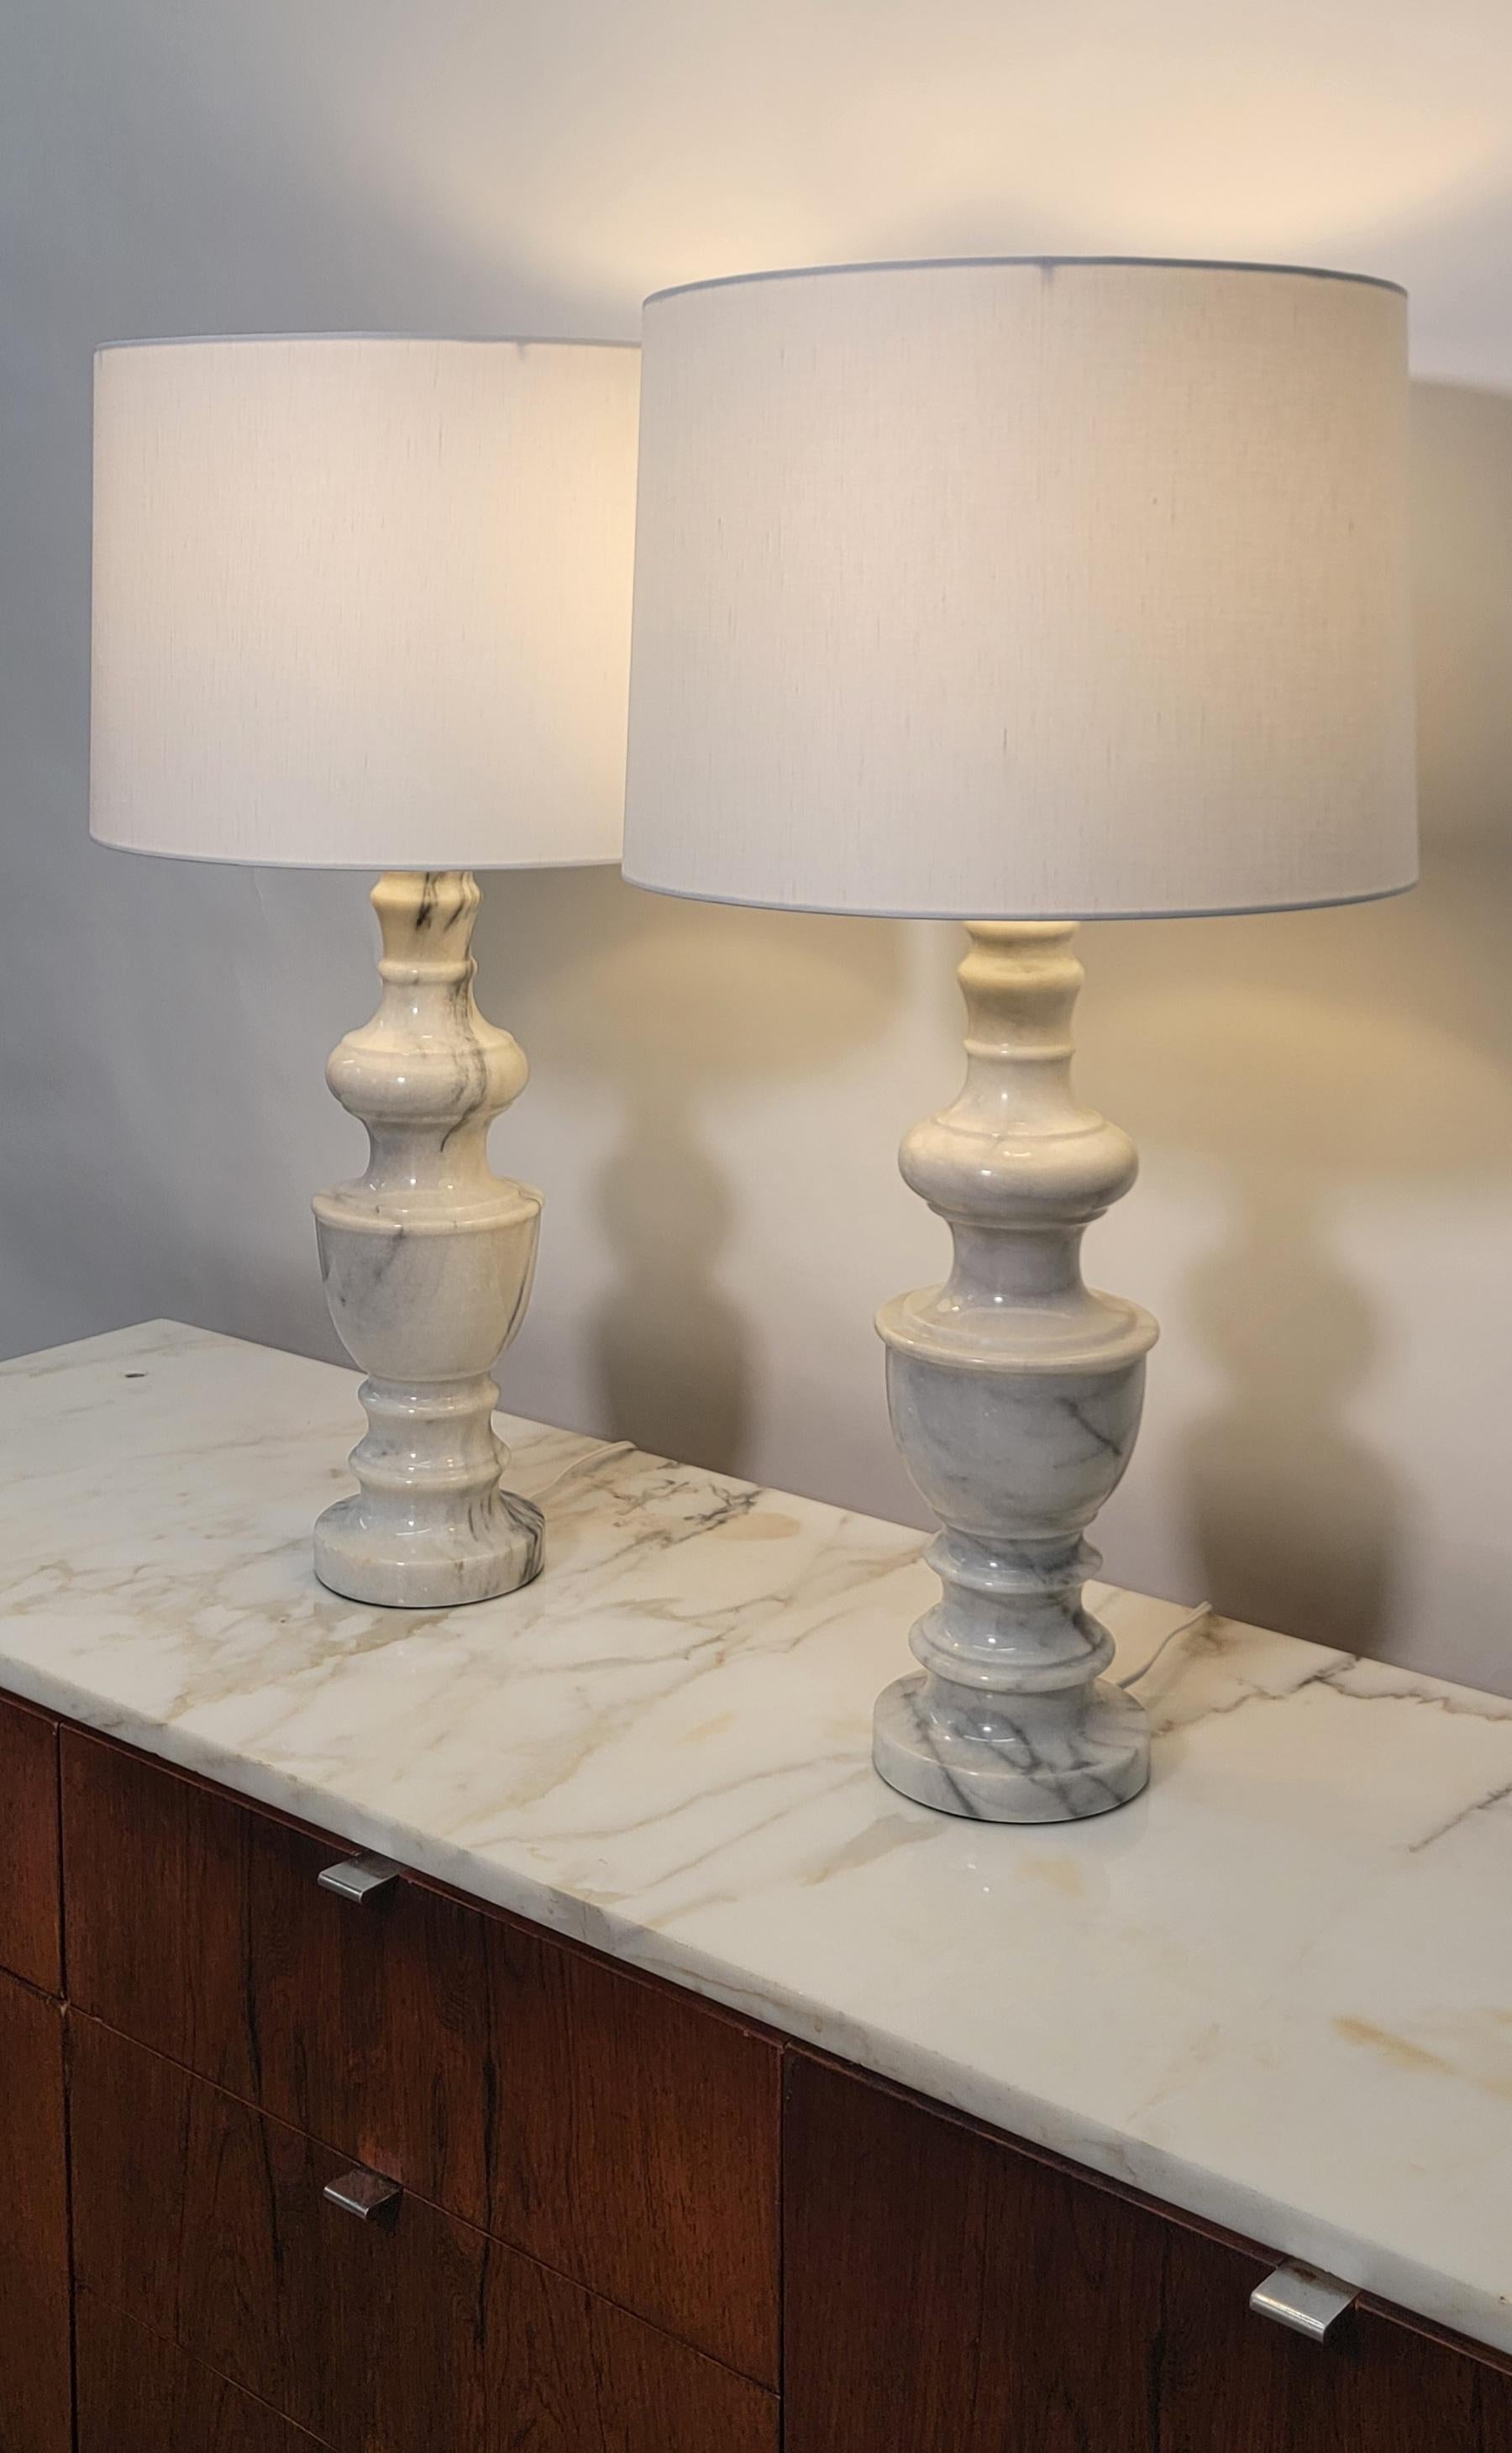 Une belle et importante paire de lampes de bureau ou de table en marbre blanc de style néoclassique, circa 20e siècle, Italie. Nouveaux abat-jours personnalisés en lin blanc. Les paires sont majoritairement blanches avec quelques veines gris foncé